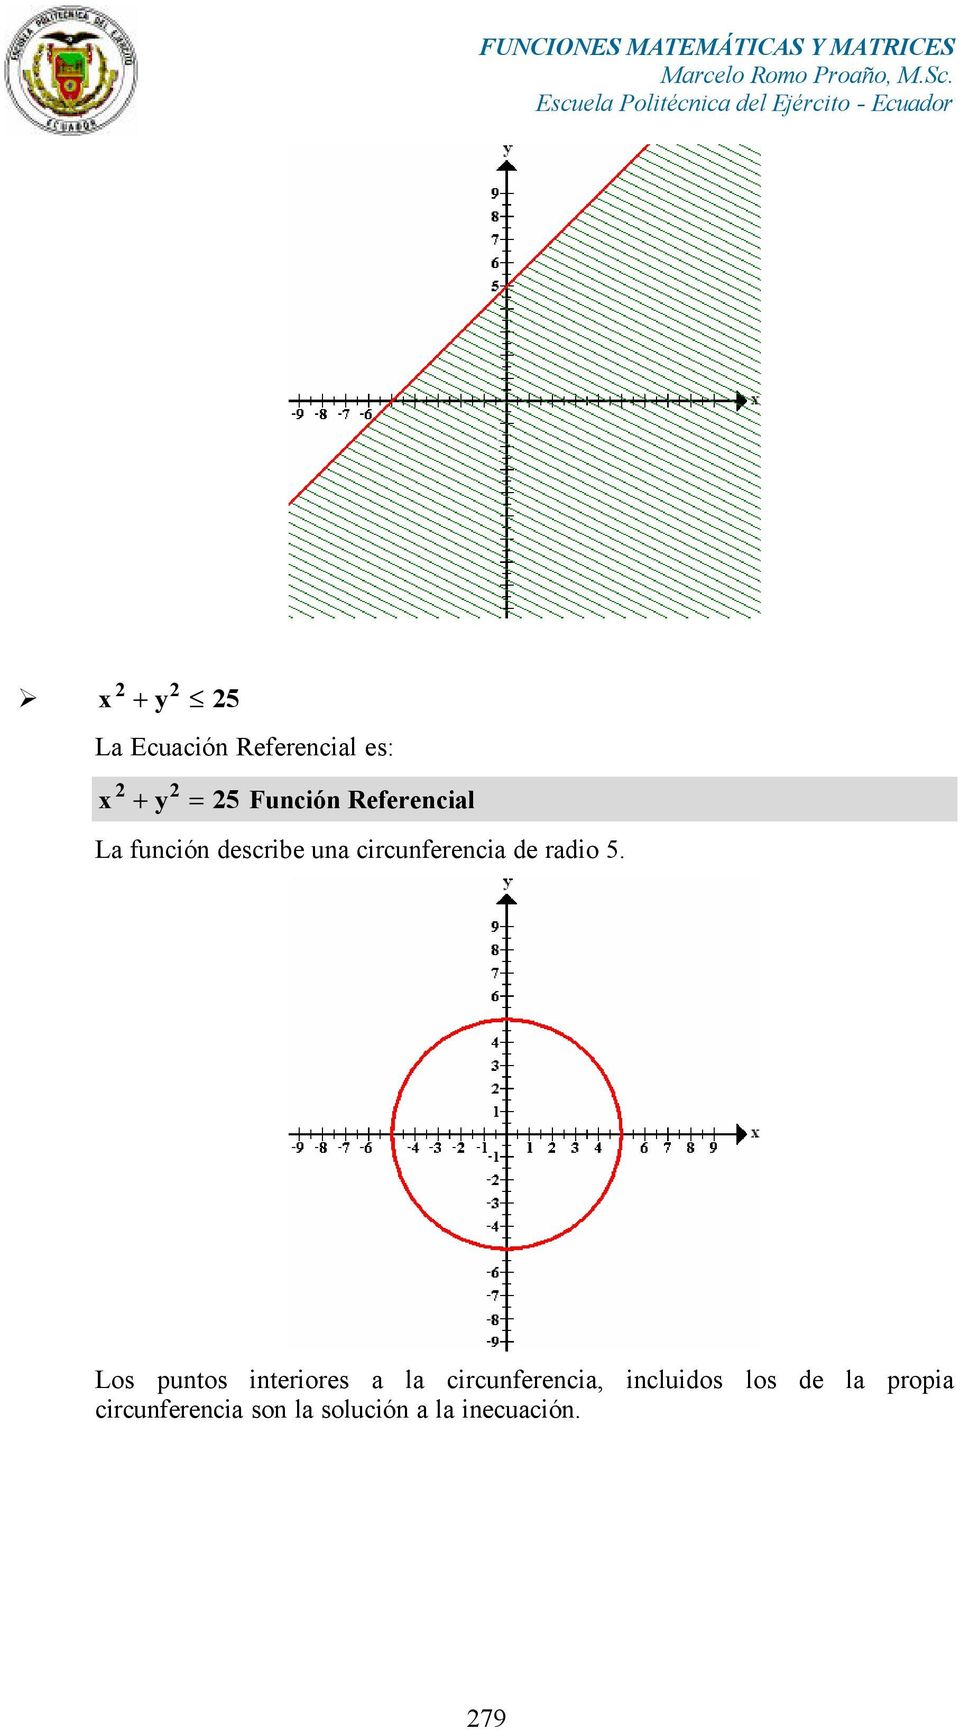 5. Los puntos interiores a la circunferencia, incluidos los